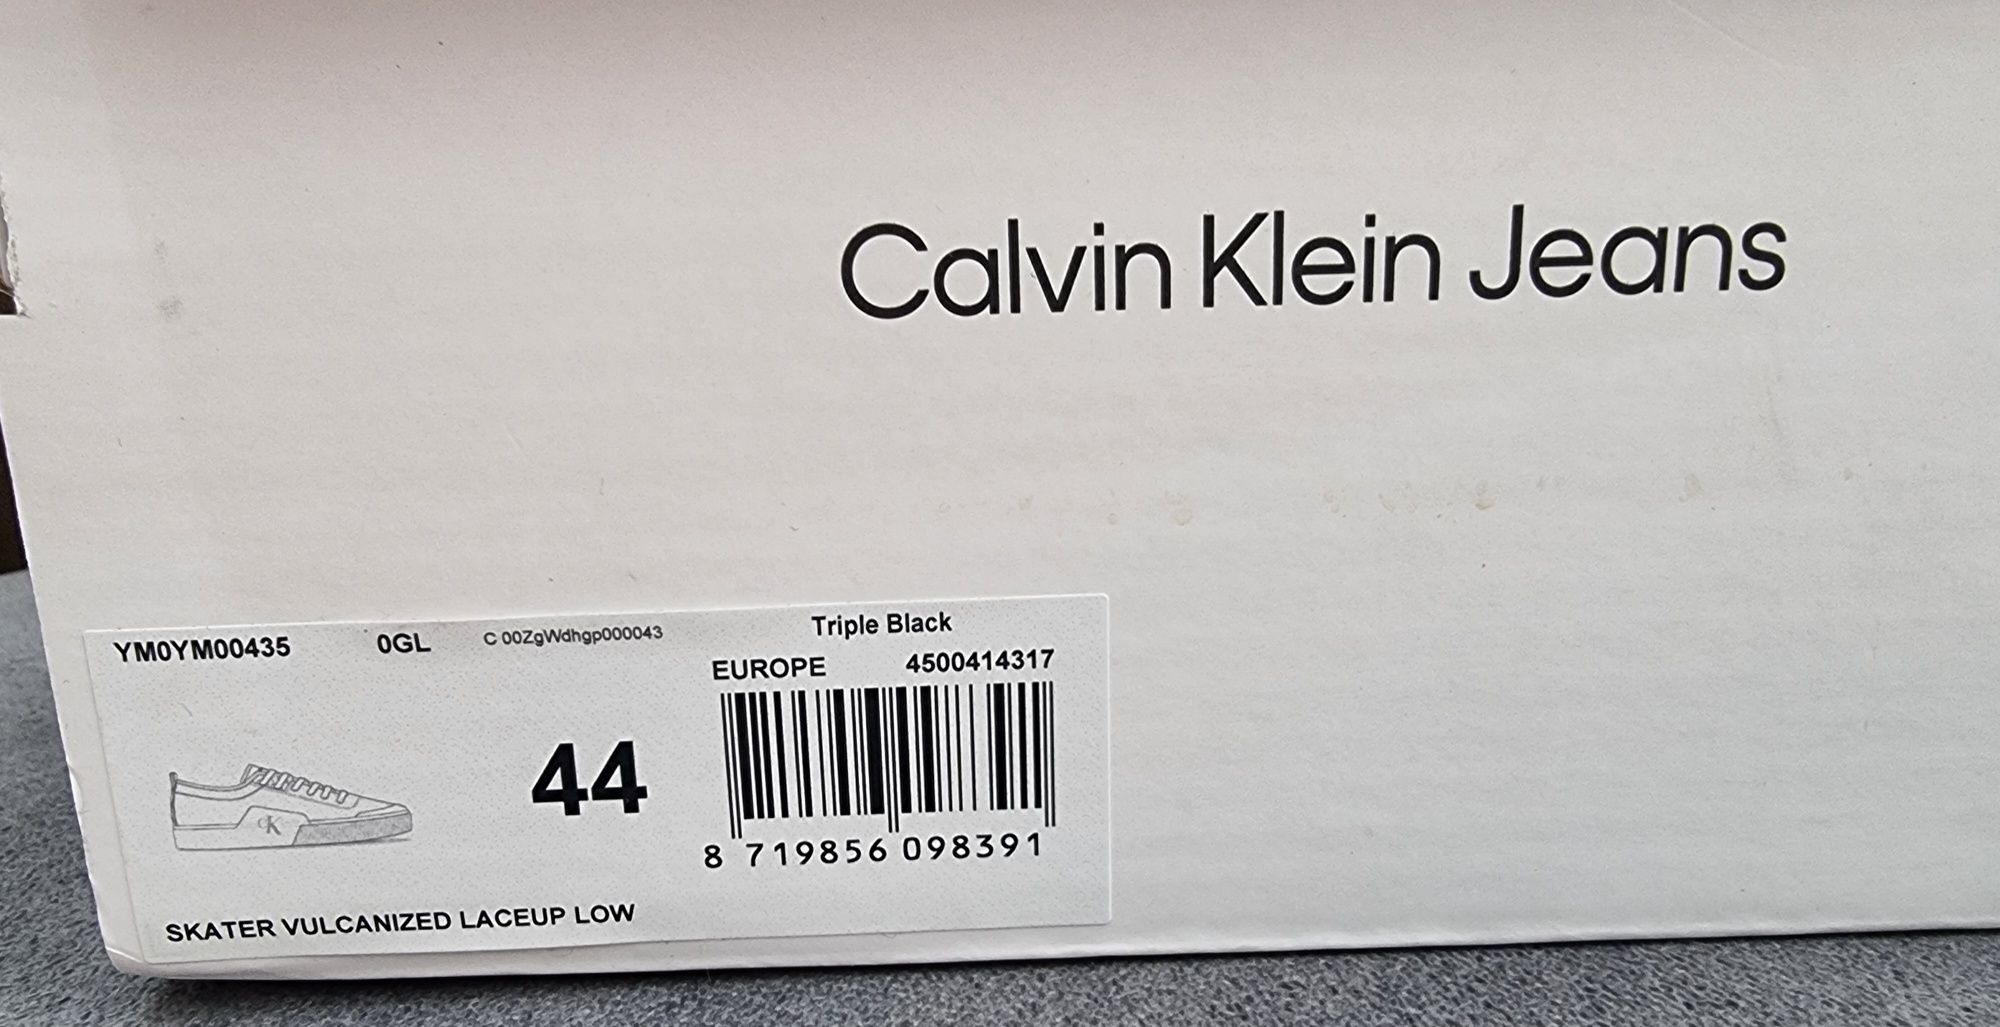 Nowe buty Calvin Klein Jeans rozmiar 44 dł. wkł. 28 cm. Chełm • OLX.pl